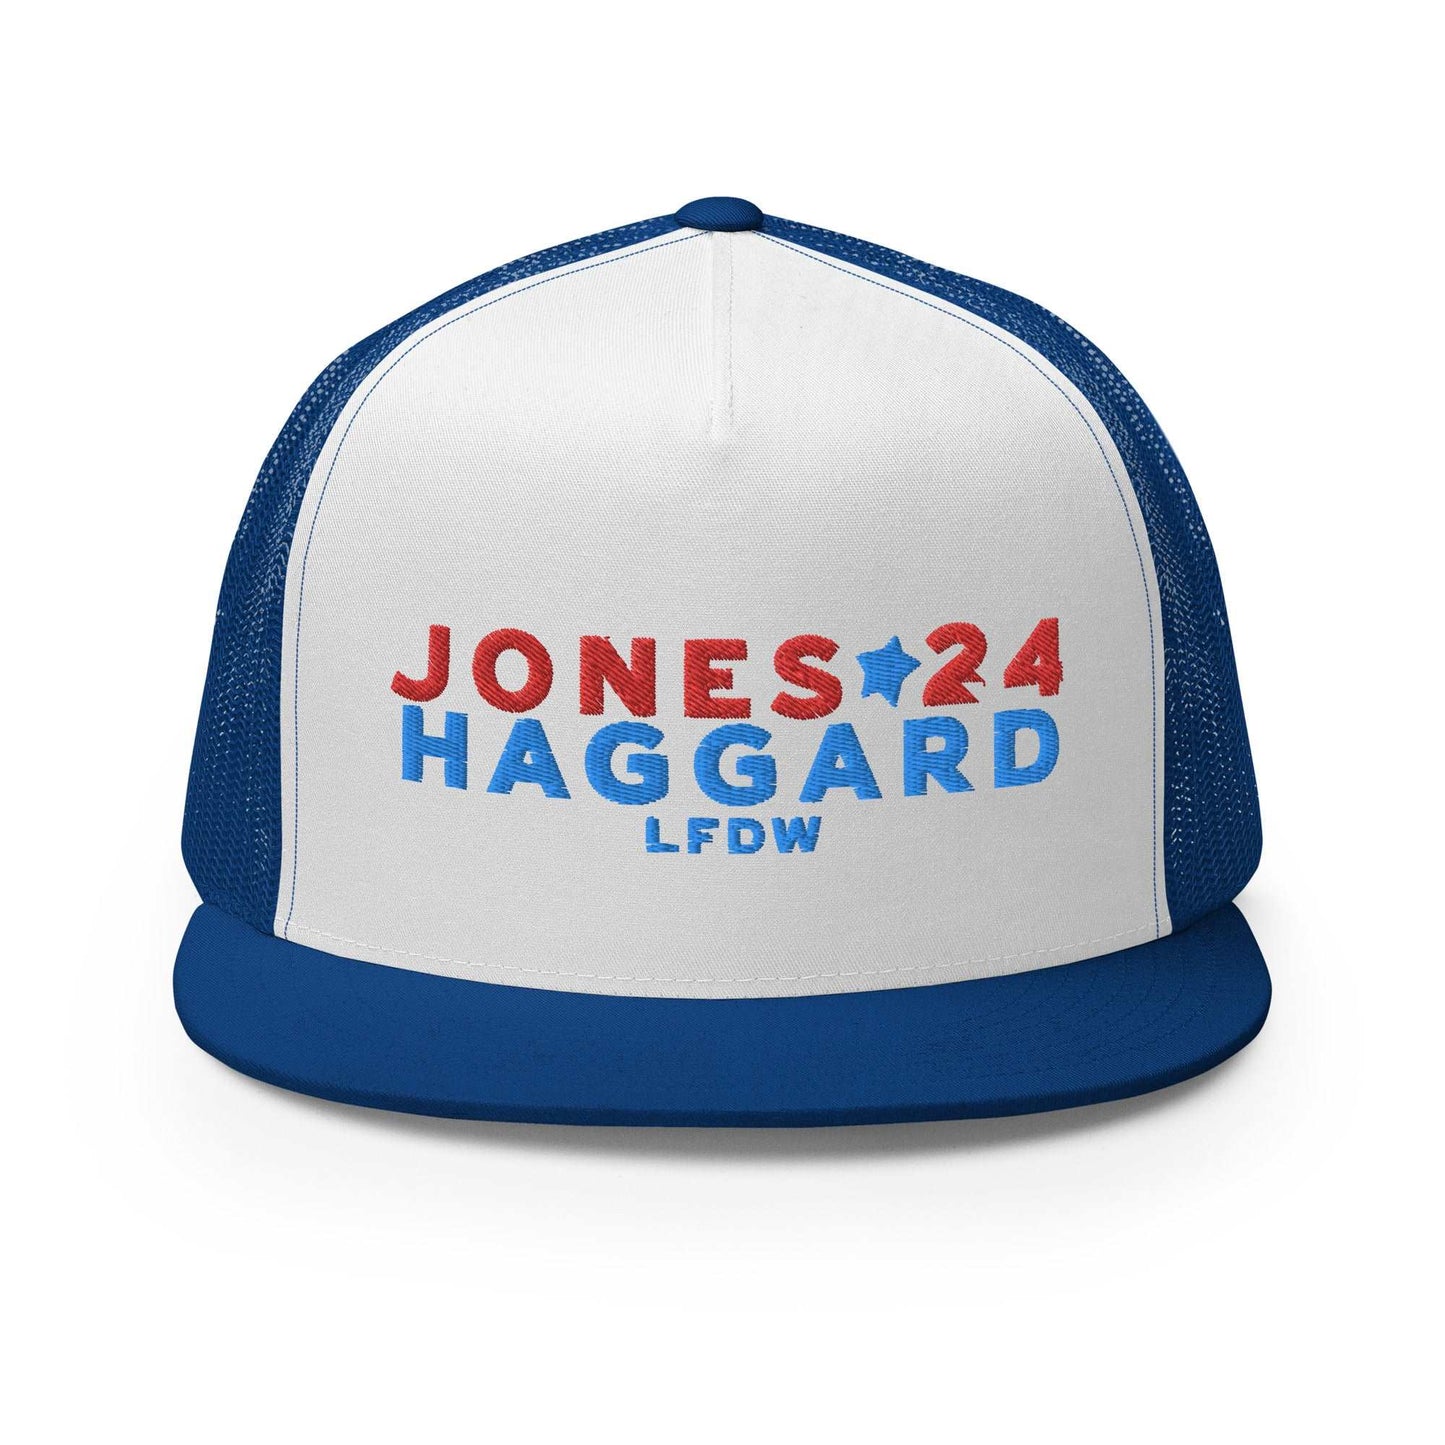 Jones/Haggard '24 Trucker Cap